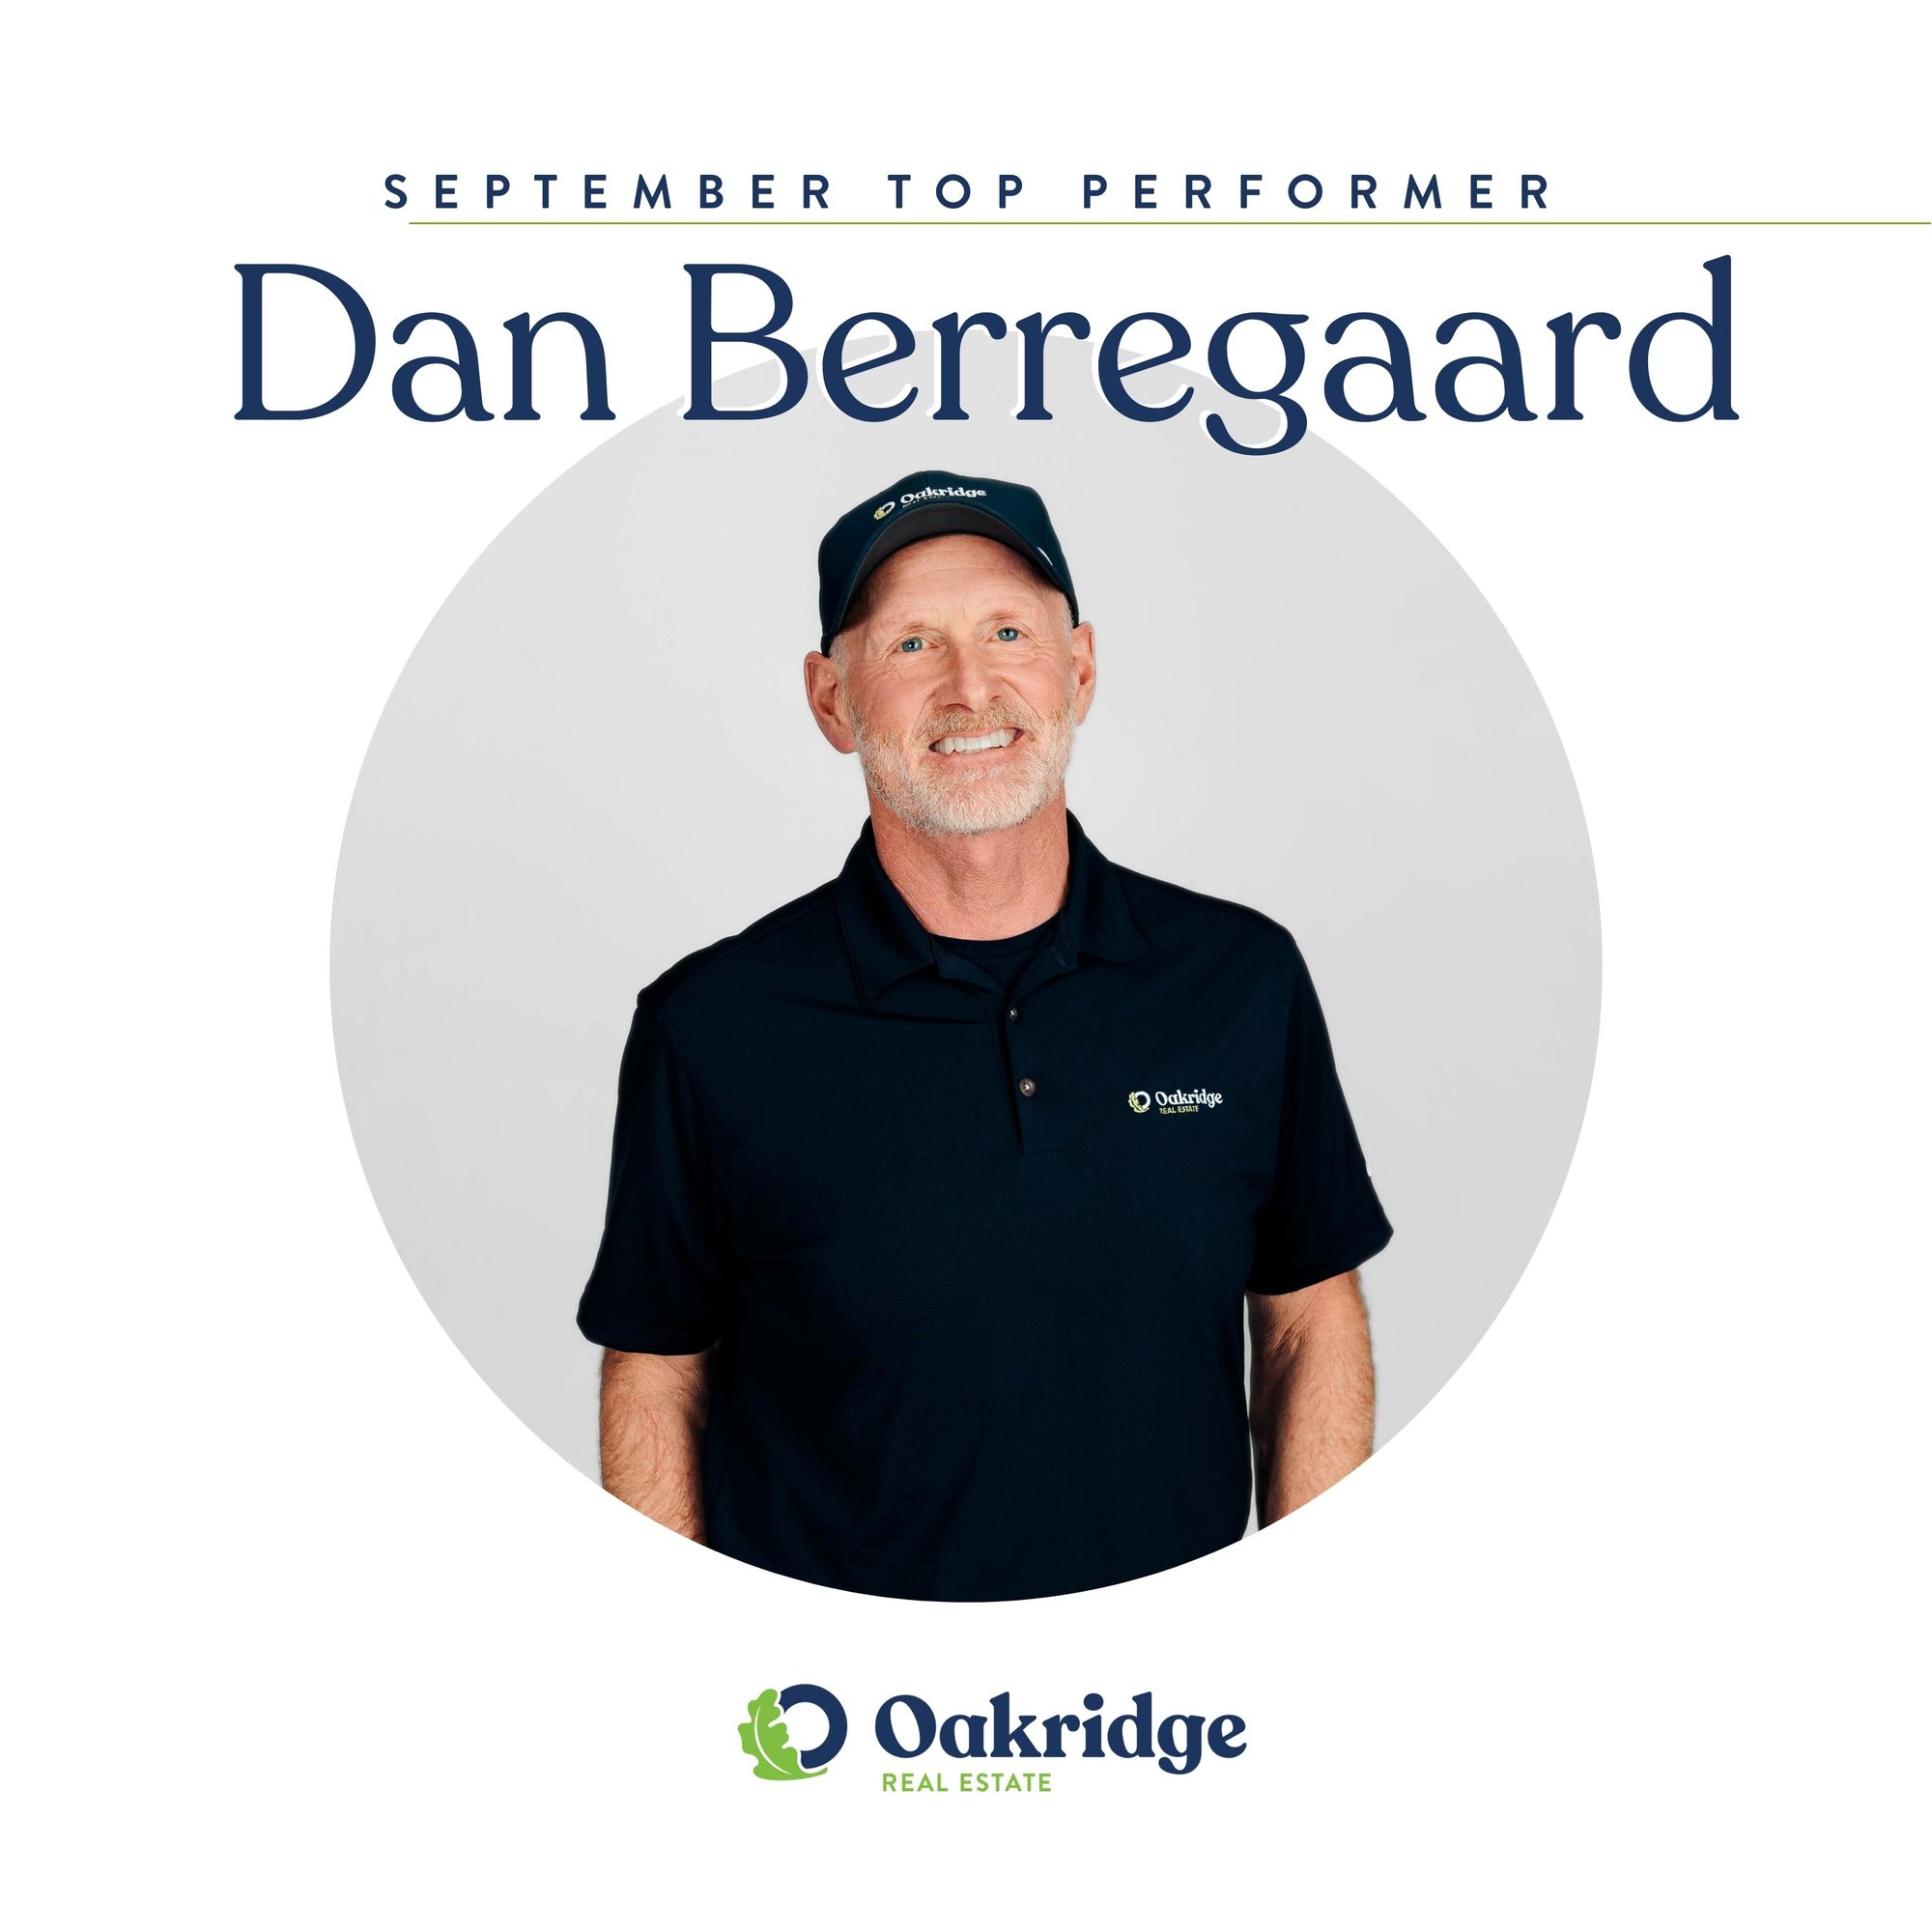 Dan Berregaard September Top Performer | Oakridge Real Estate